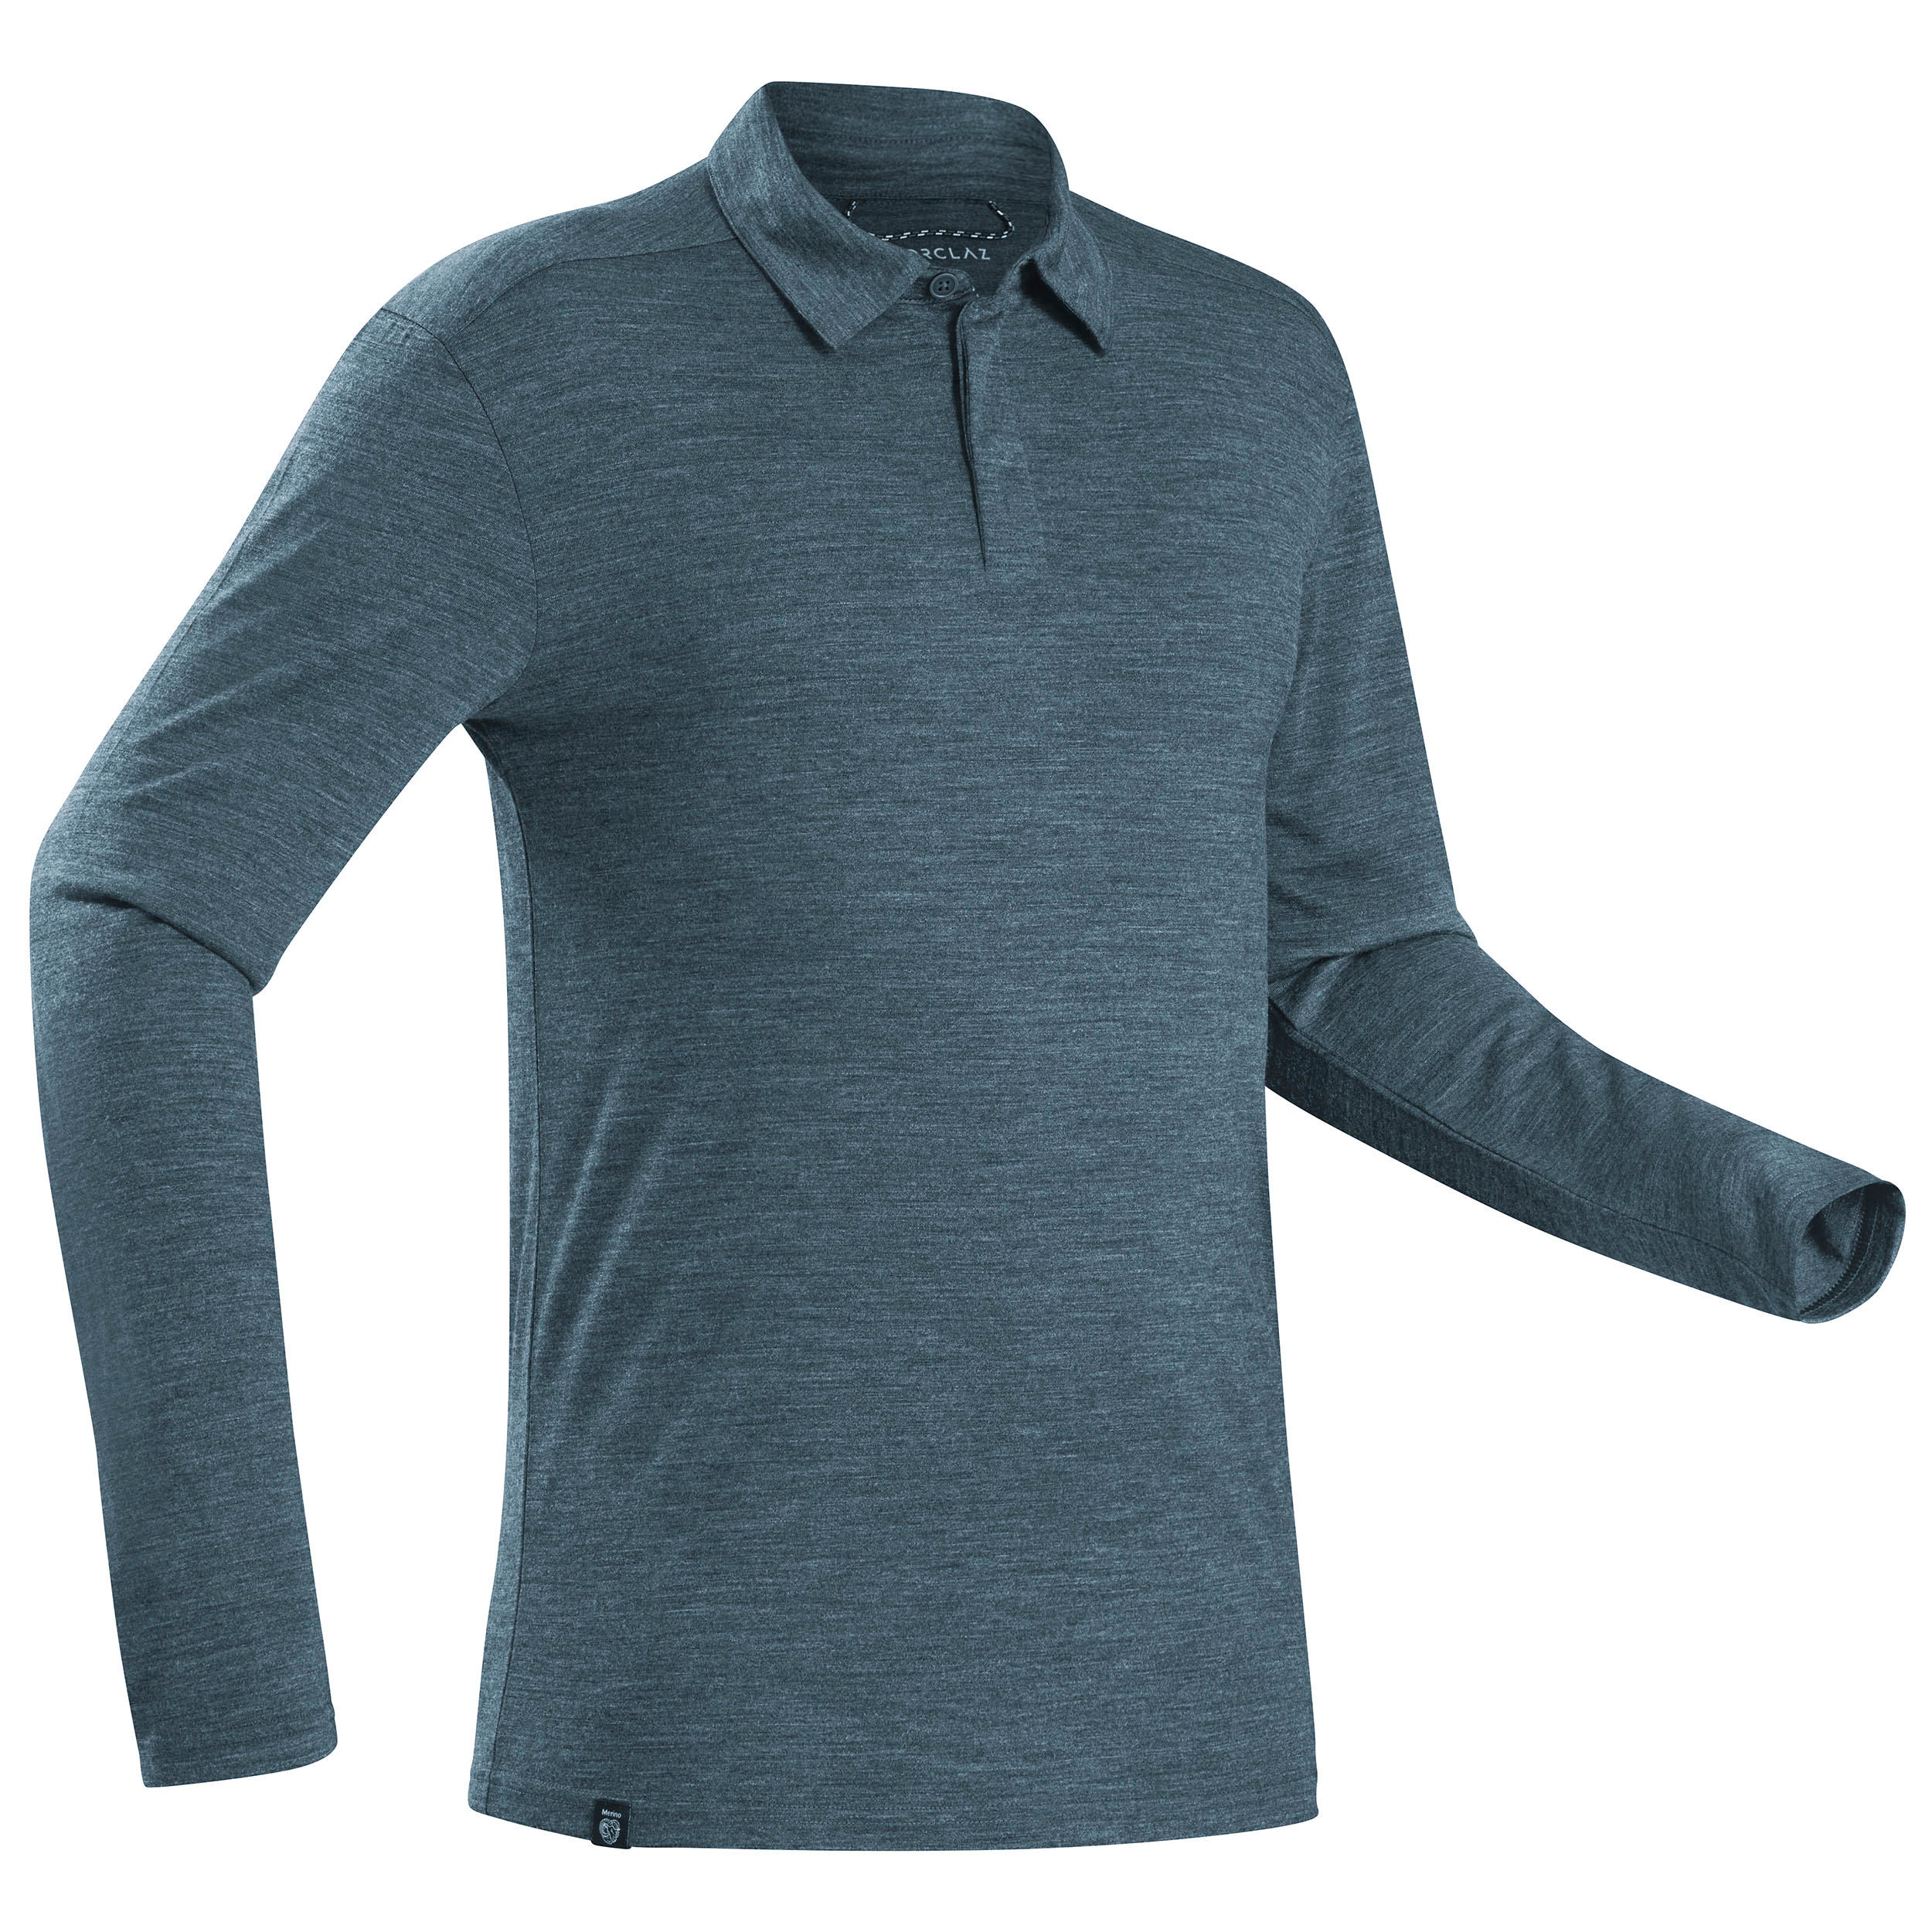 Men’s Long-sleeved Travel Trekking Merino Wool Polo Shirt - TRAVEL 500 Blue 1/10